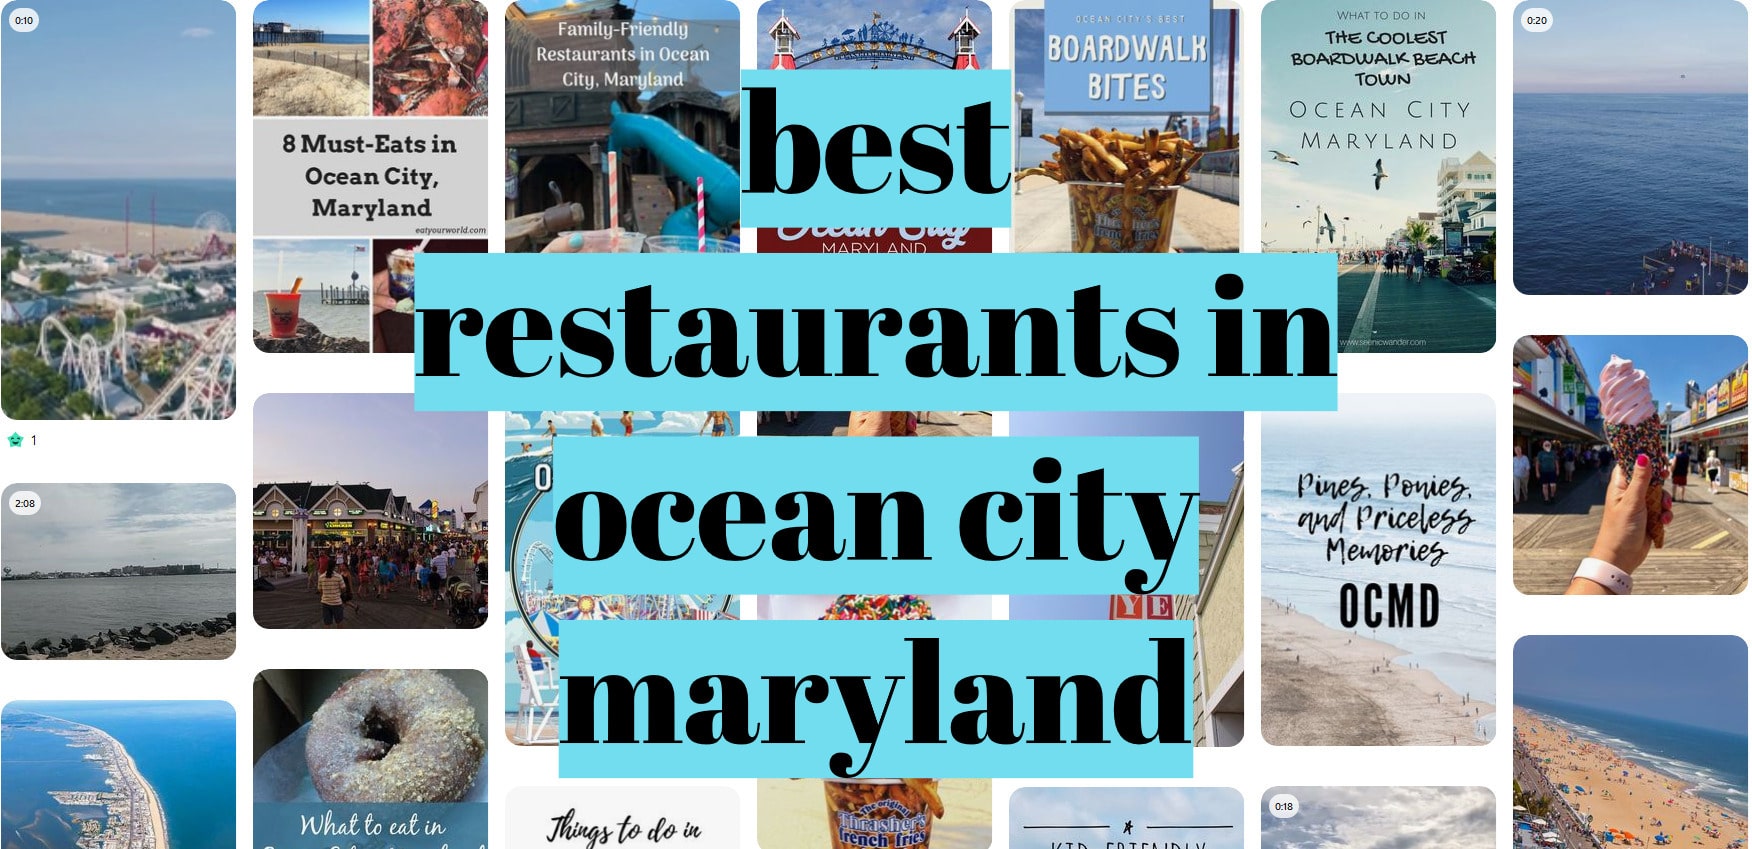 Best of Ocean City, Maryland Best restaurants in ocean city maryland